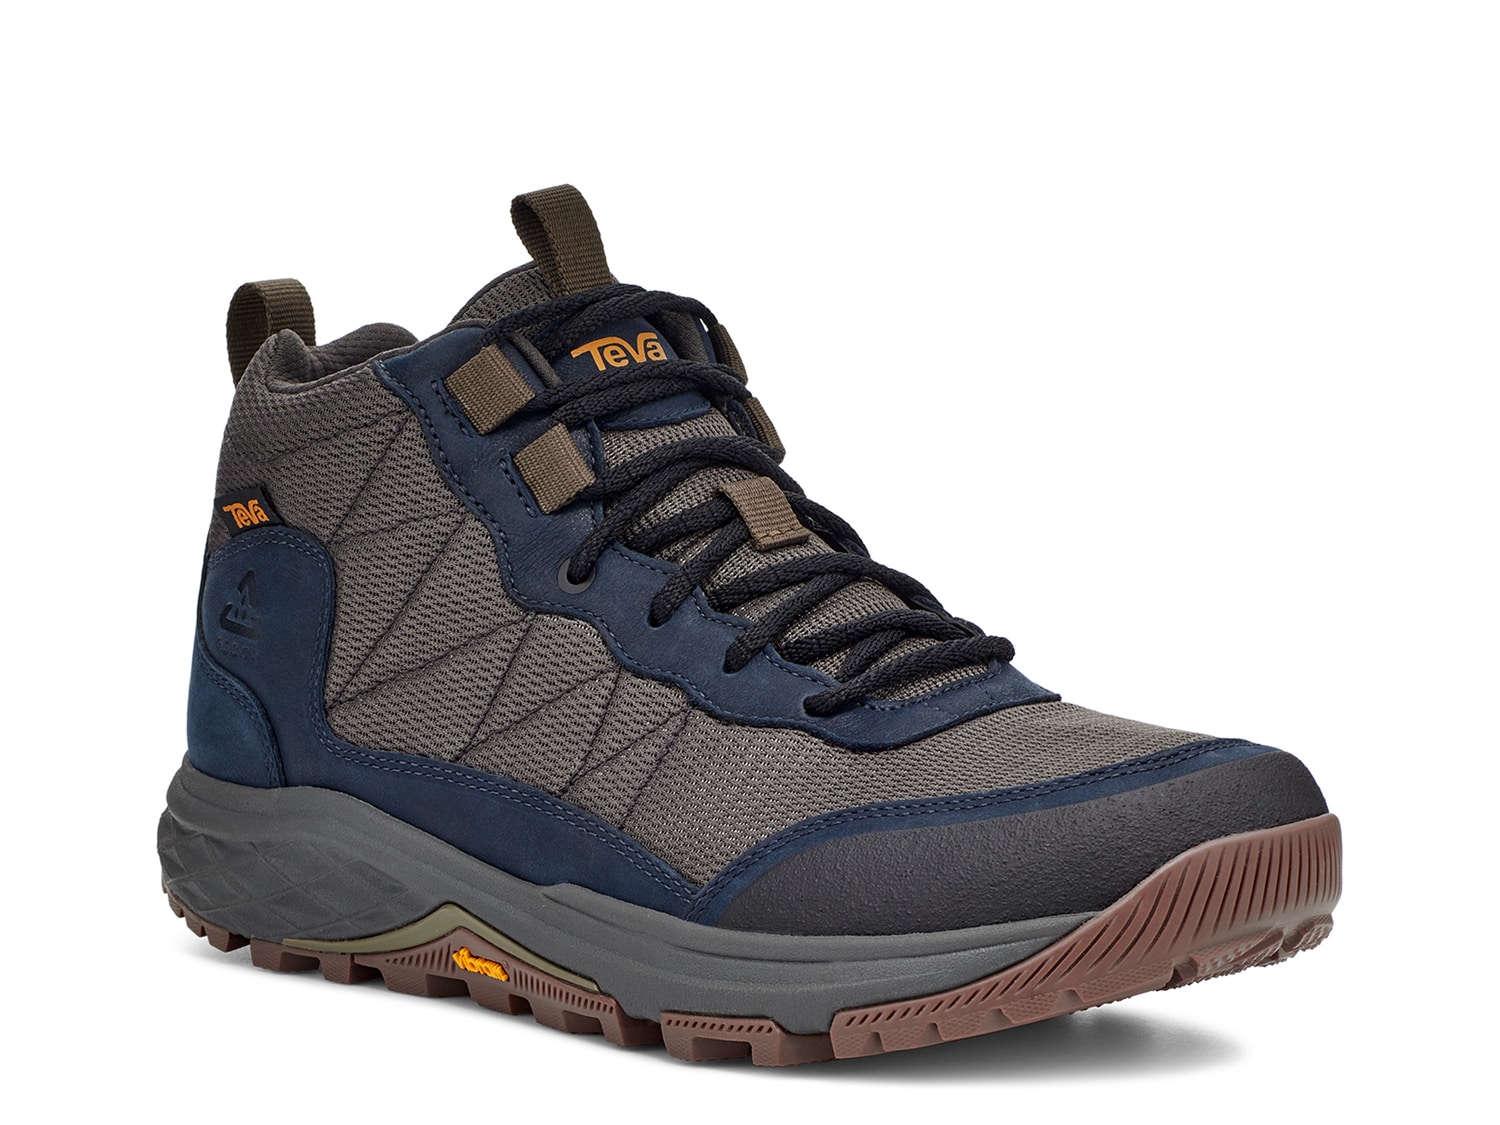 Teva Ridgeview Hiking Shoe - Men's - Free Shipping | DSW